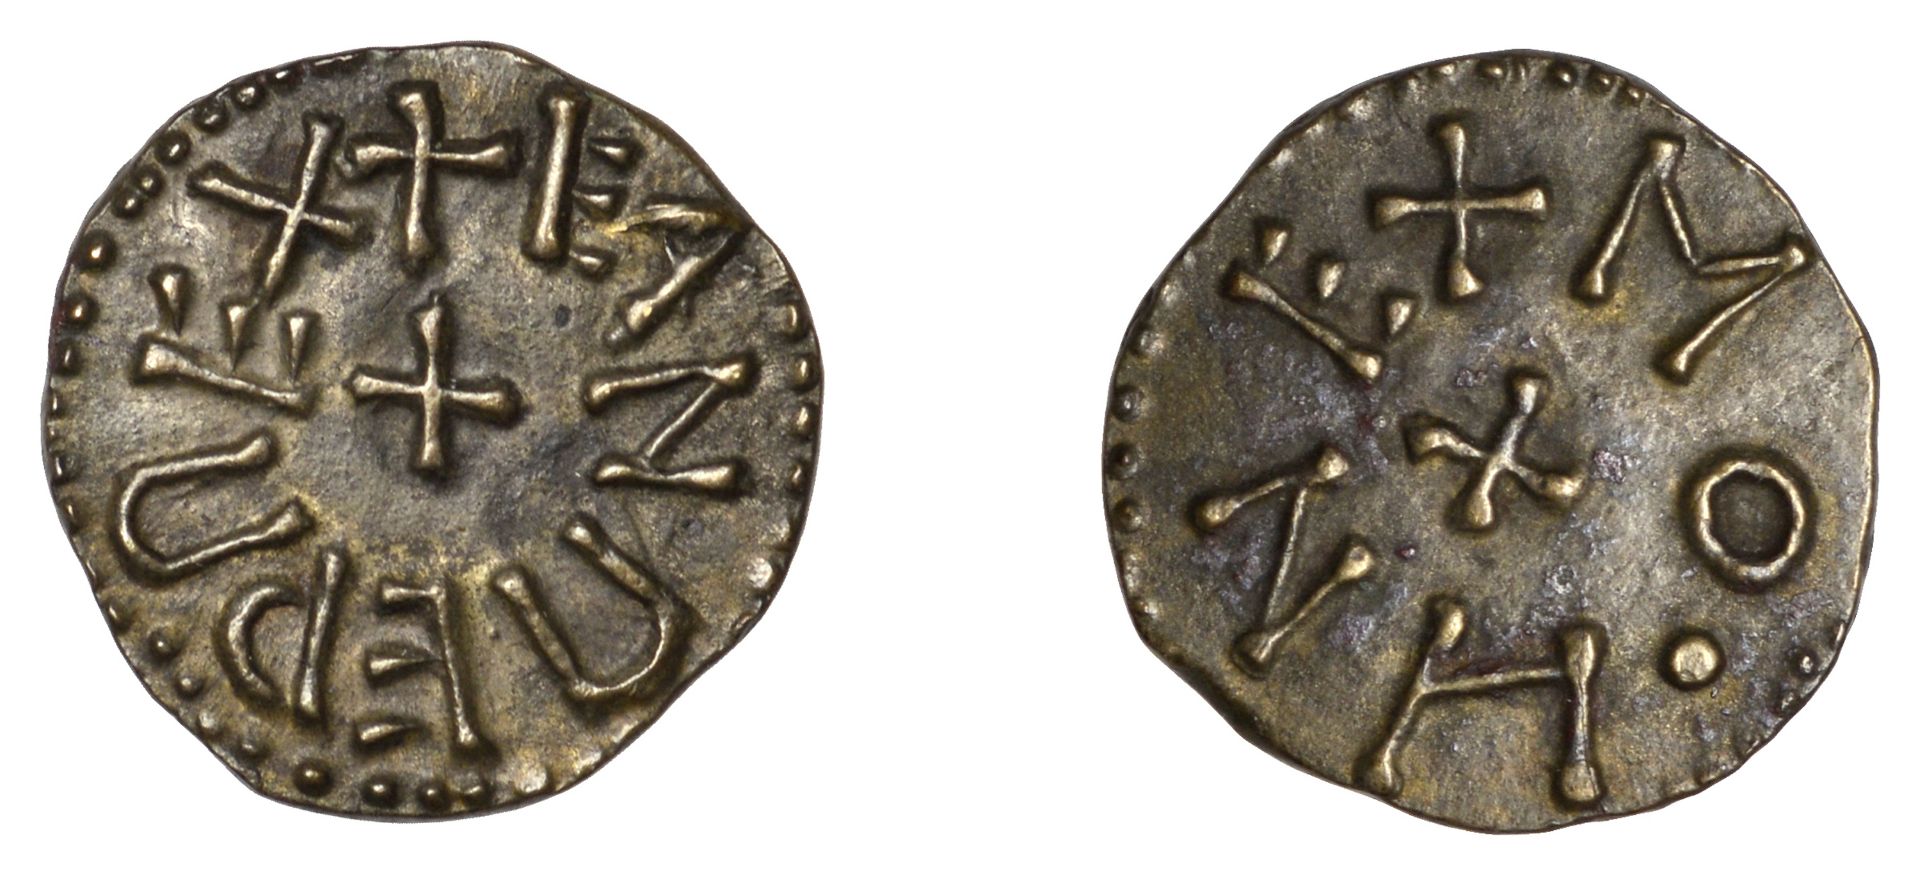 Kings of Northumbria, Eanred (810-41), Styca, Phase II, Monne, eanred rex around cross, rev....